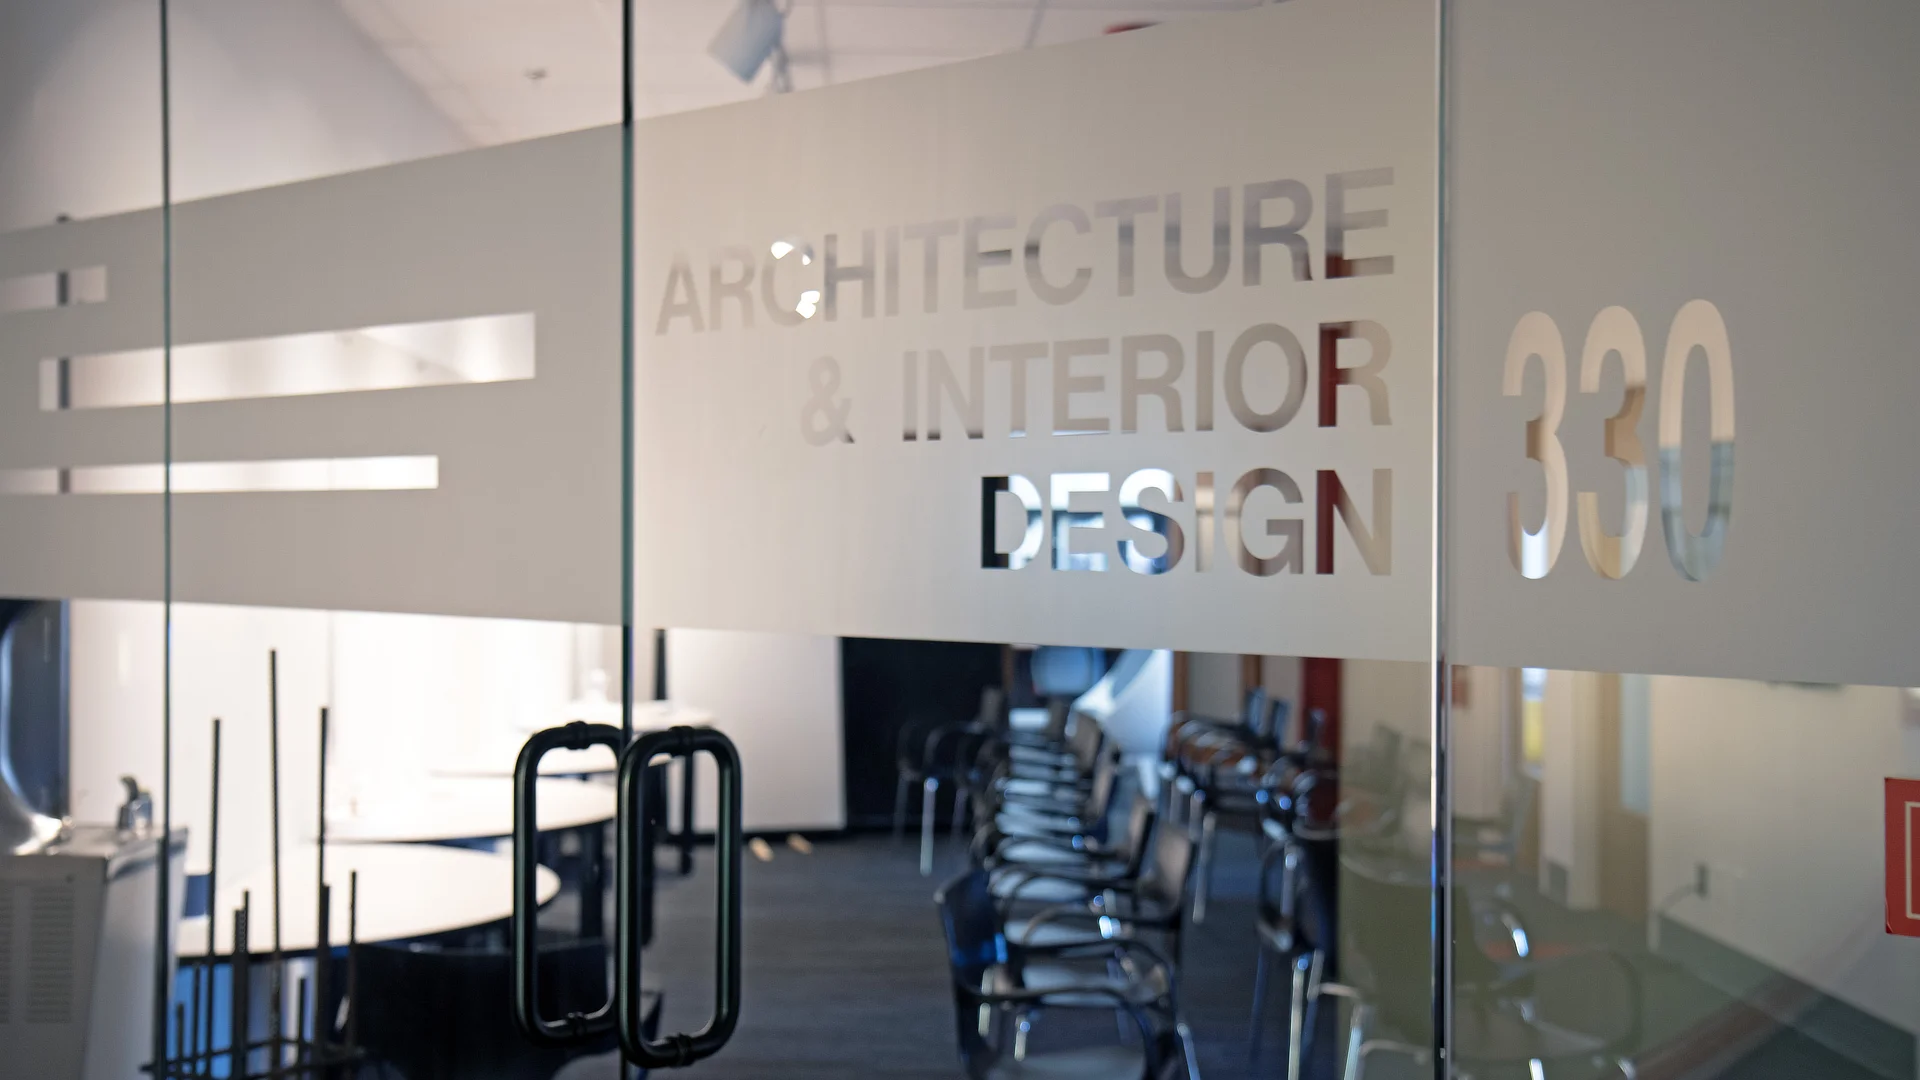 Architecture and Interior Design entrance